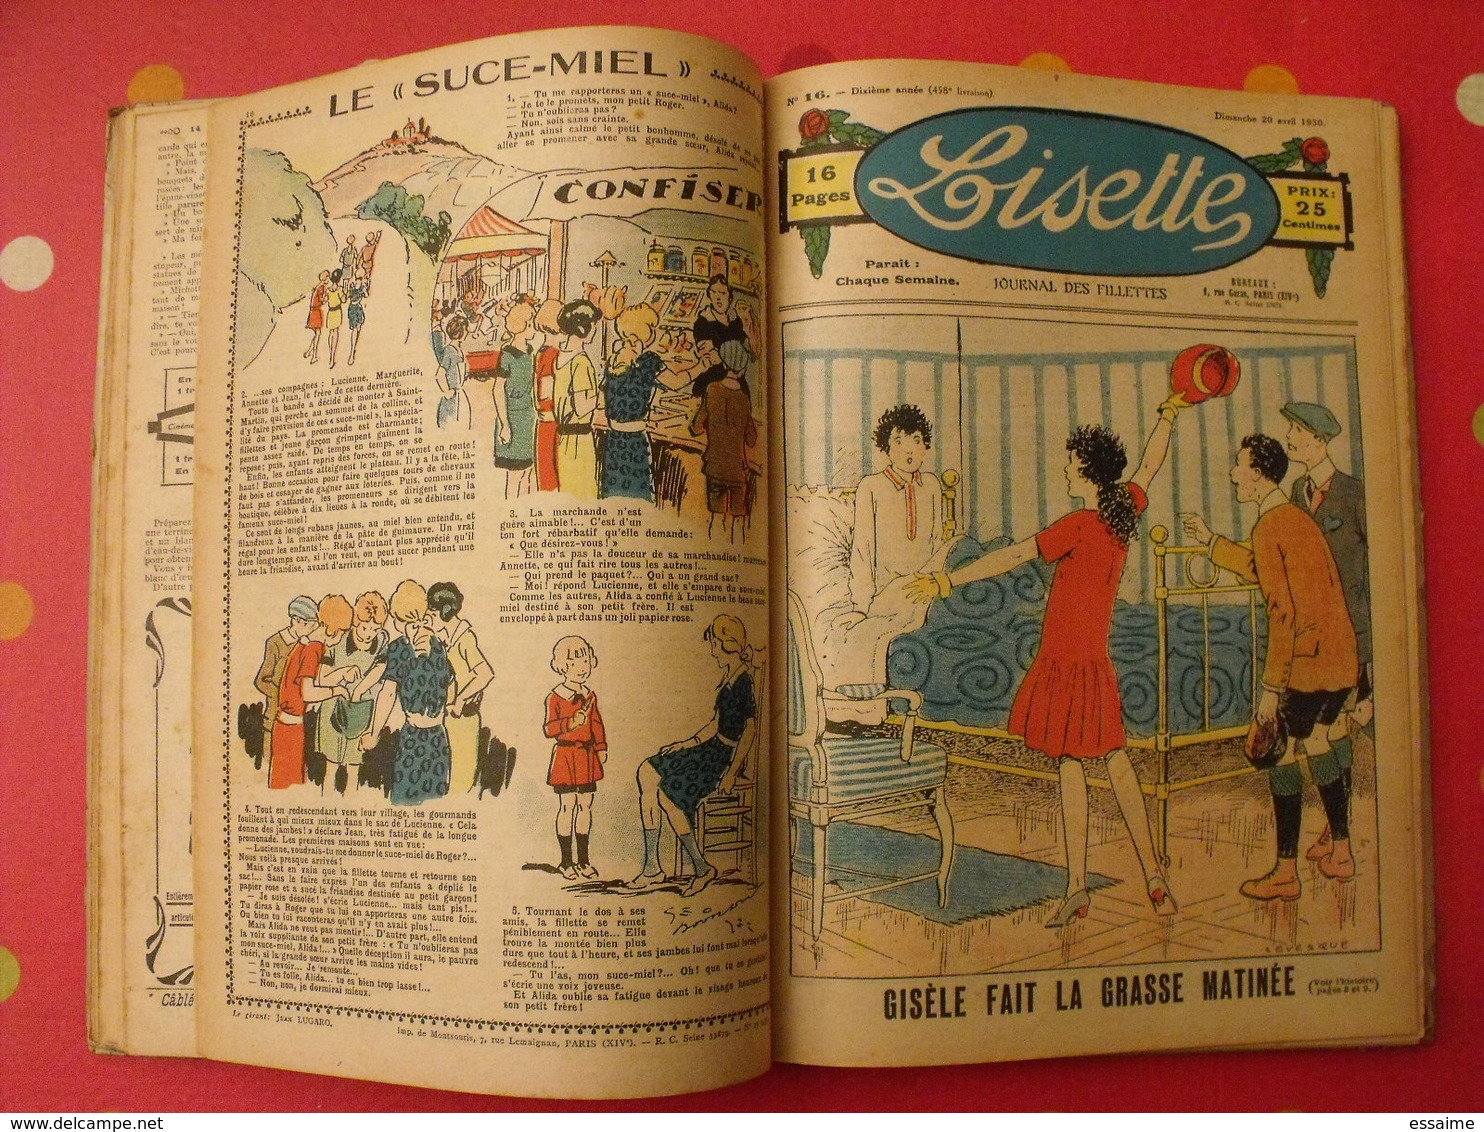 Lisette, album 6 VI. 1930. recueil reliure. le rallic levesque maitrejean cuvillier bourdin dot